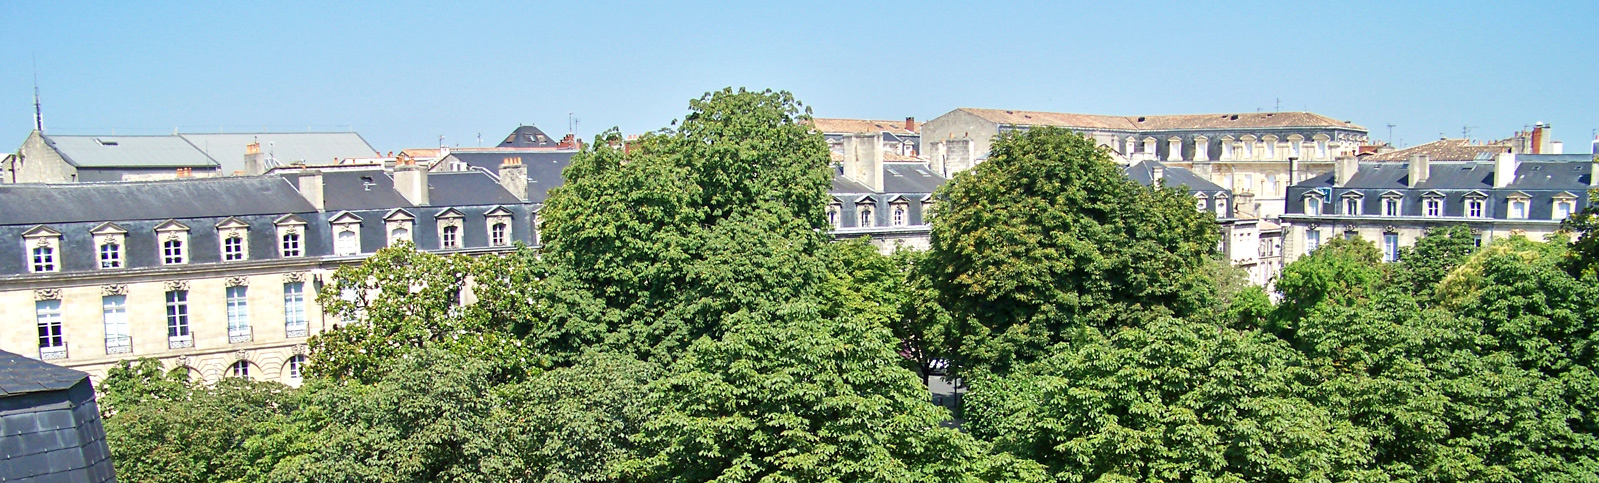 Hotel La Porte Dijeaux Bordeaux centre historique